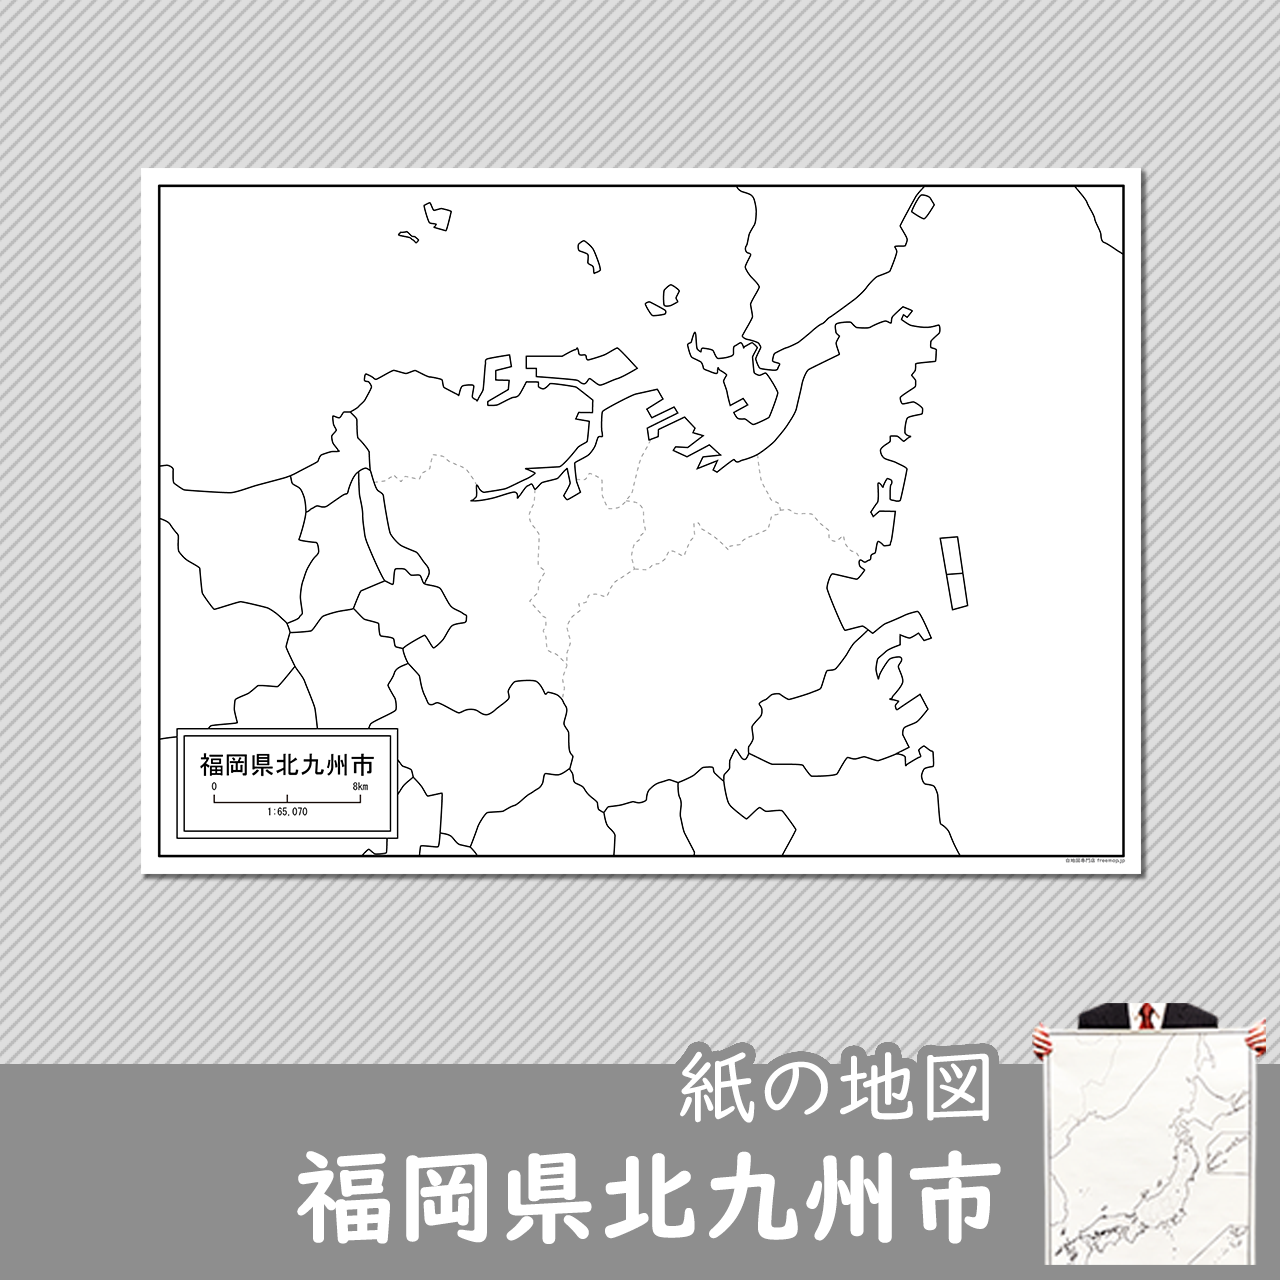 北九州市の紙の白地図のサムネイル